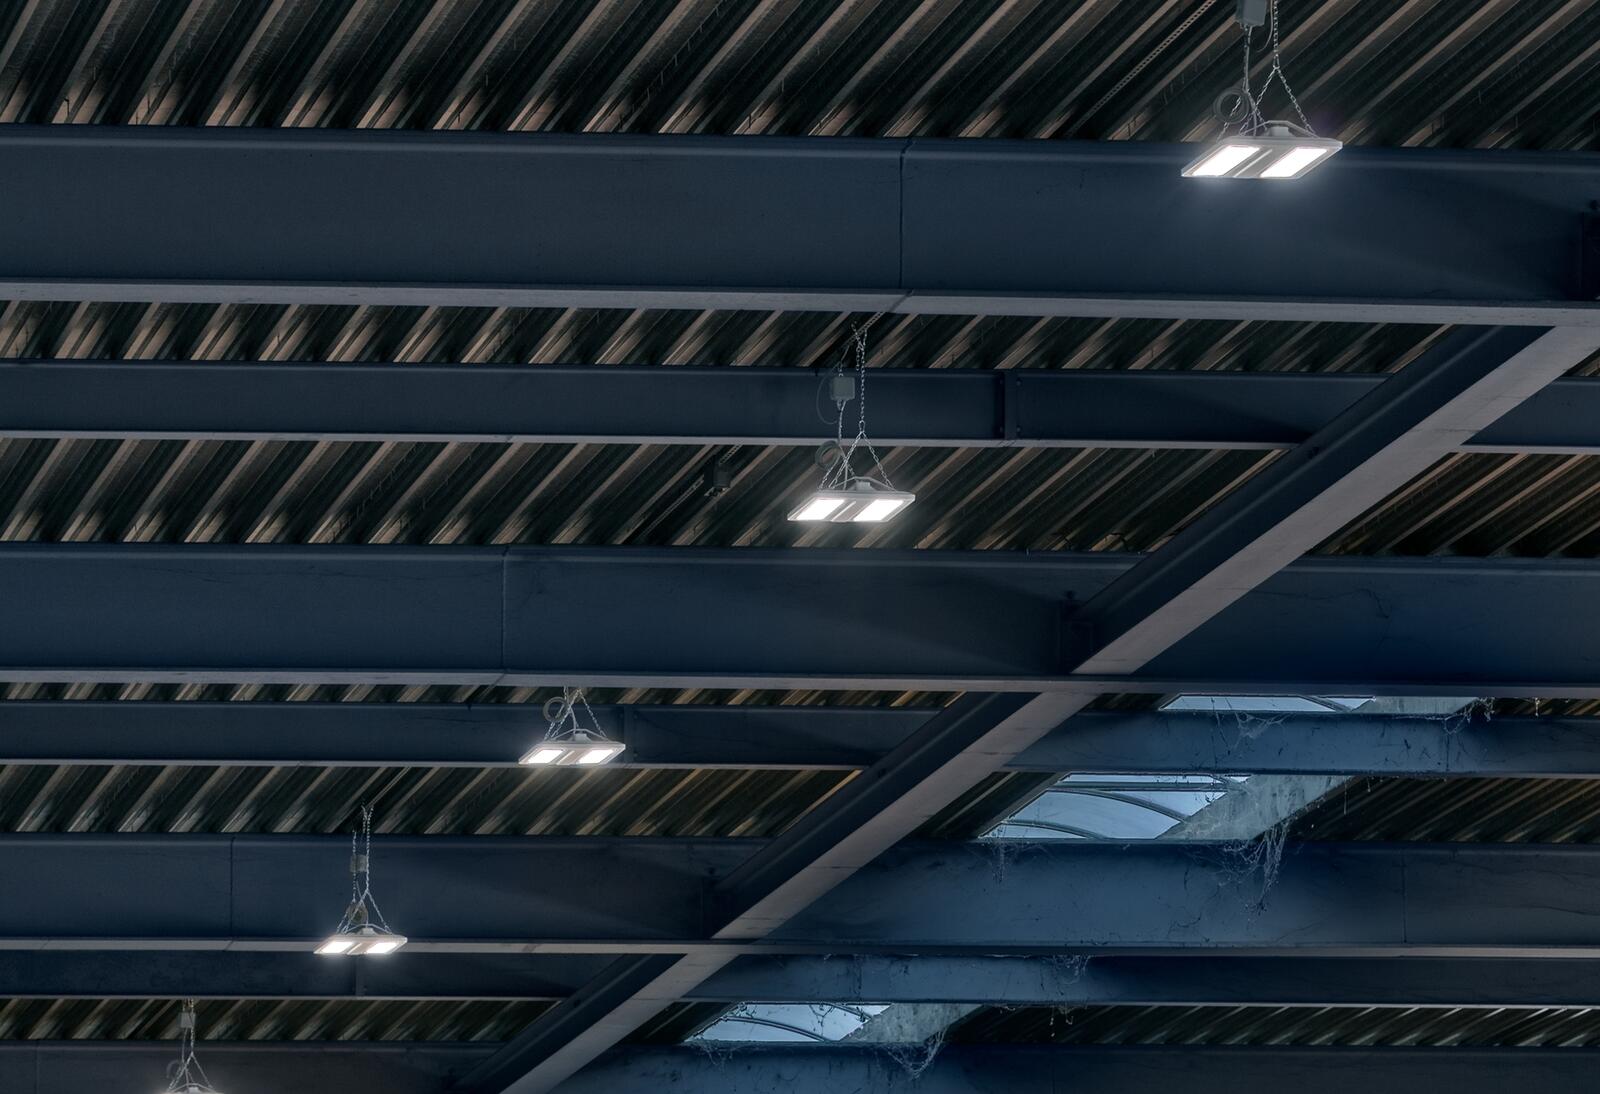 300 Leuchten sorgen für optimale Lichtverhältnisse in der Industriehalle der Forming AG.